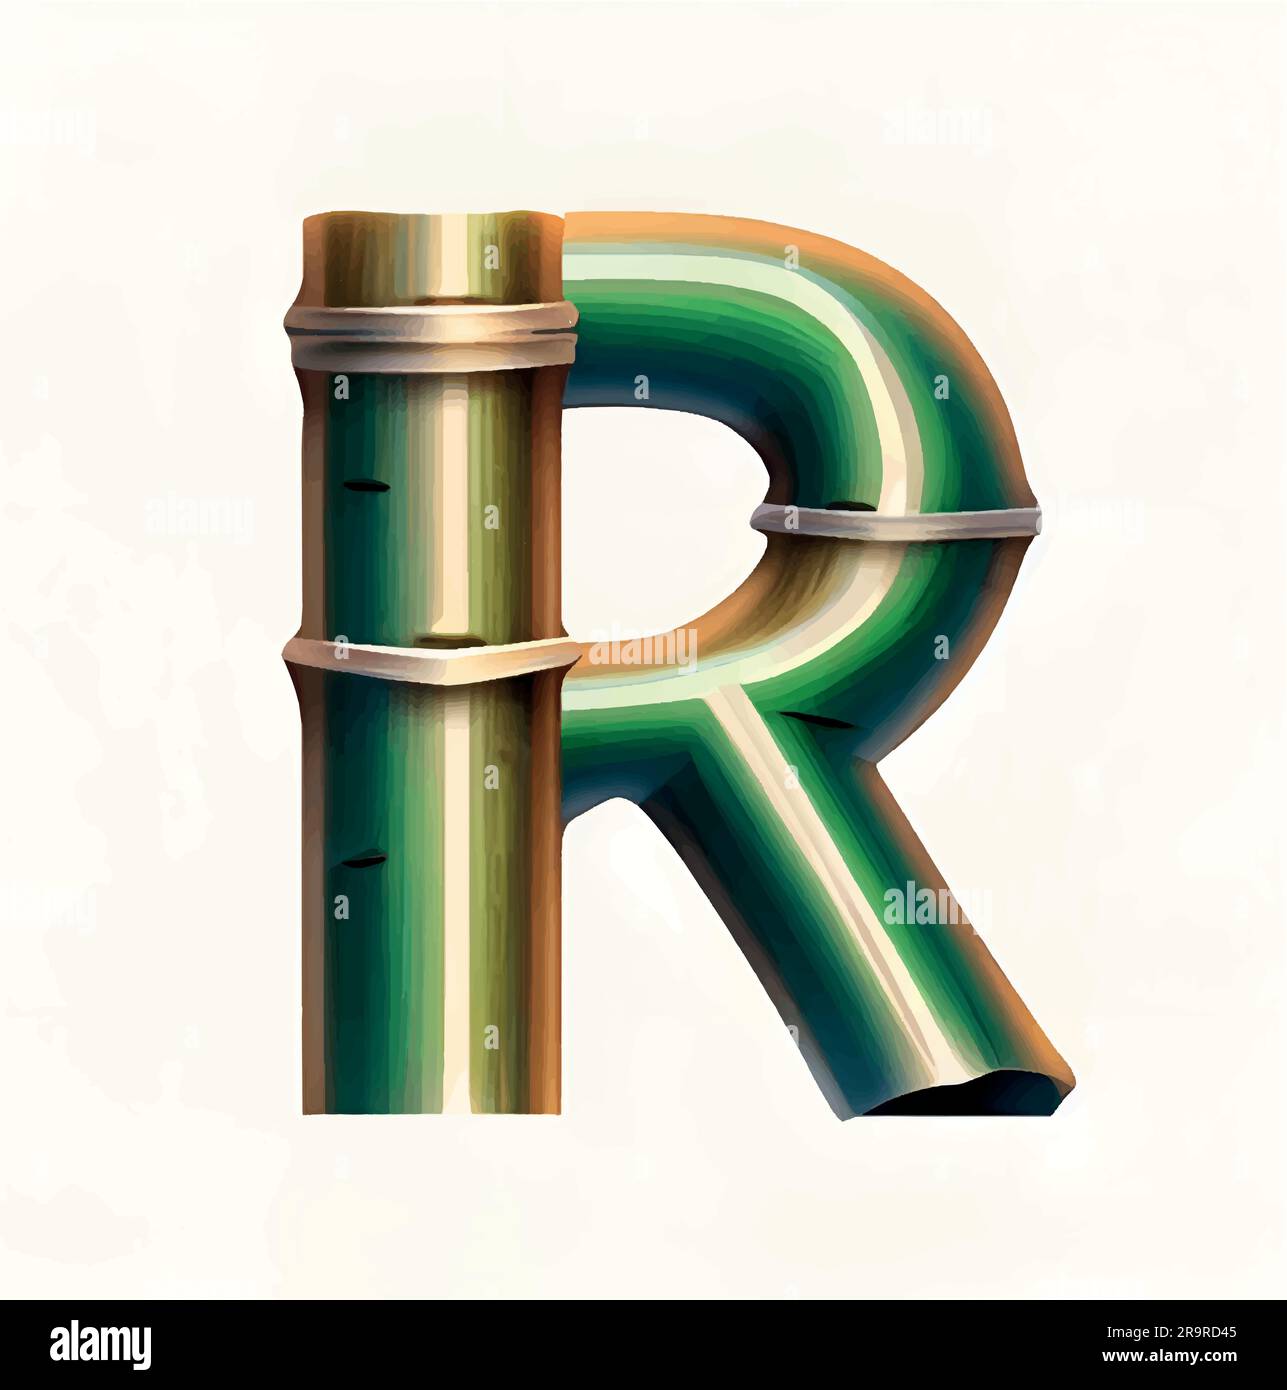 lettre majuscule r en vert bambou avec fond blanc. alphabet bambou isolé sur fond blanc, lettre r. rendu 3d. Illustration de Vecteur